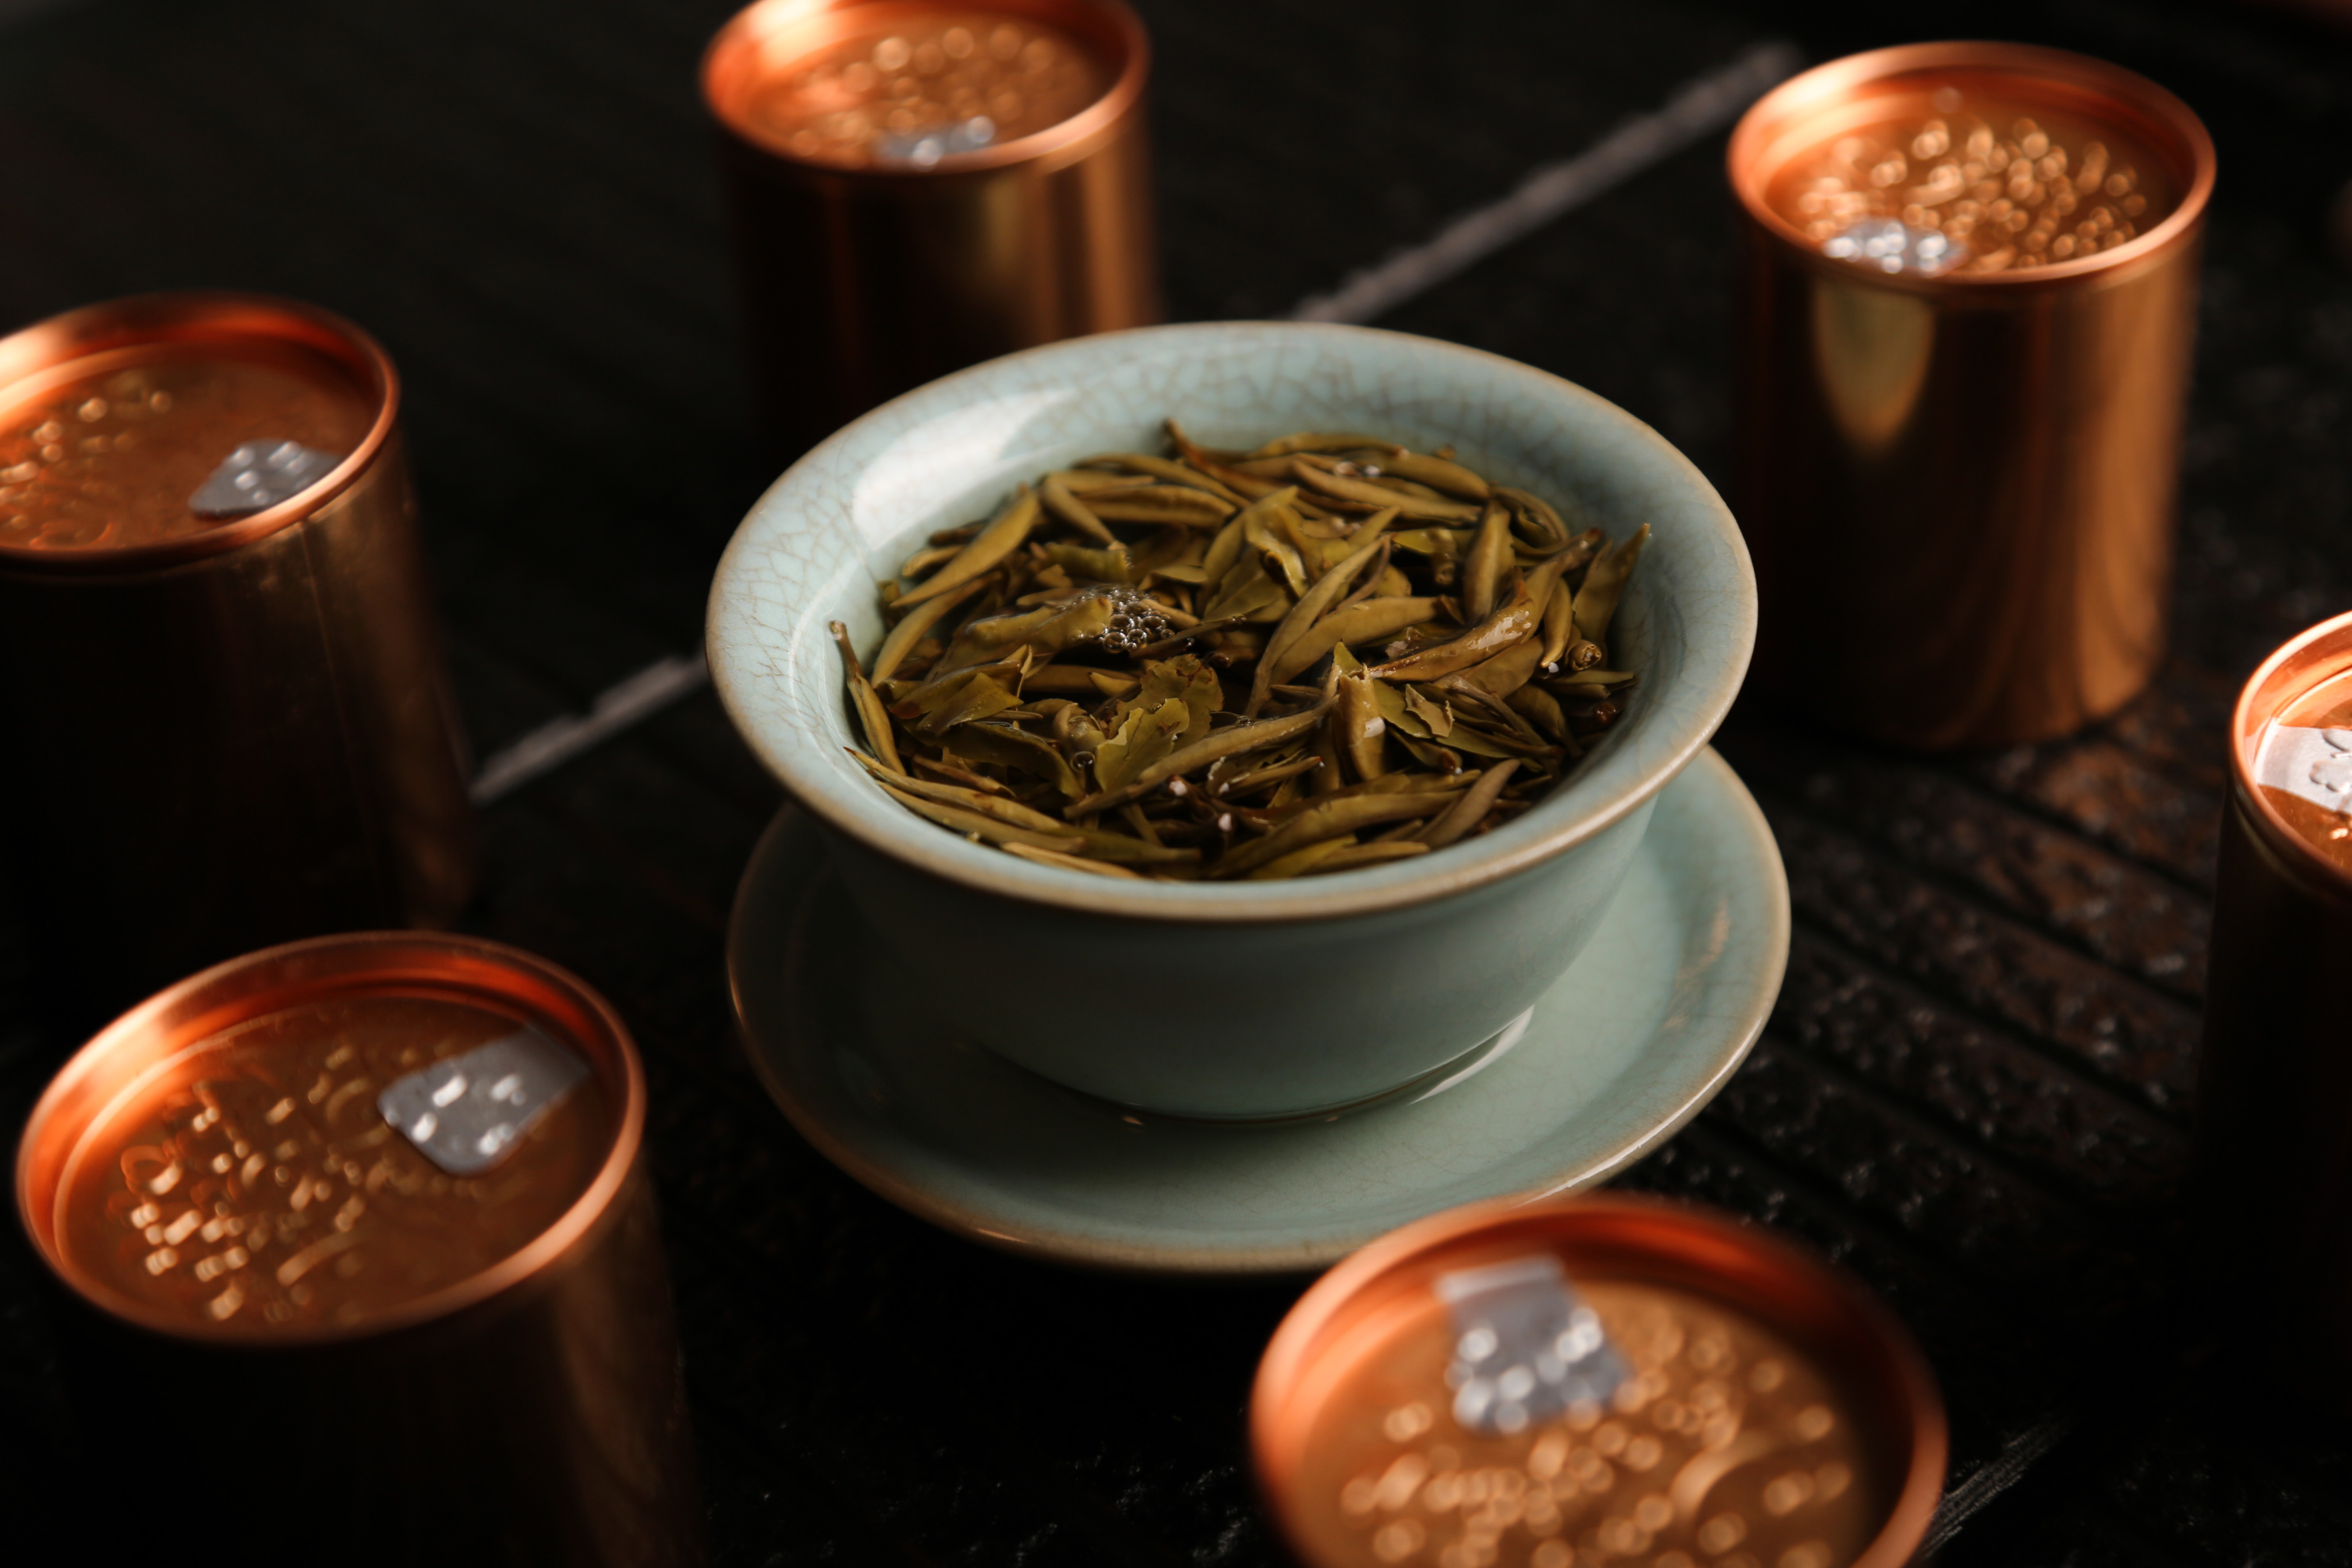 年轻人爱上茶文化内涵 “九十三度白茶”让喝茶流行起来